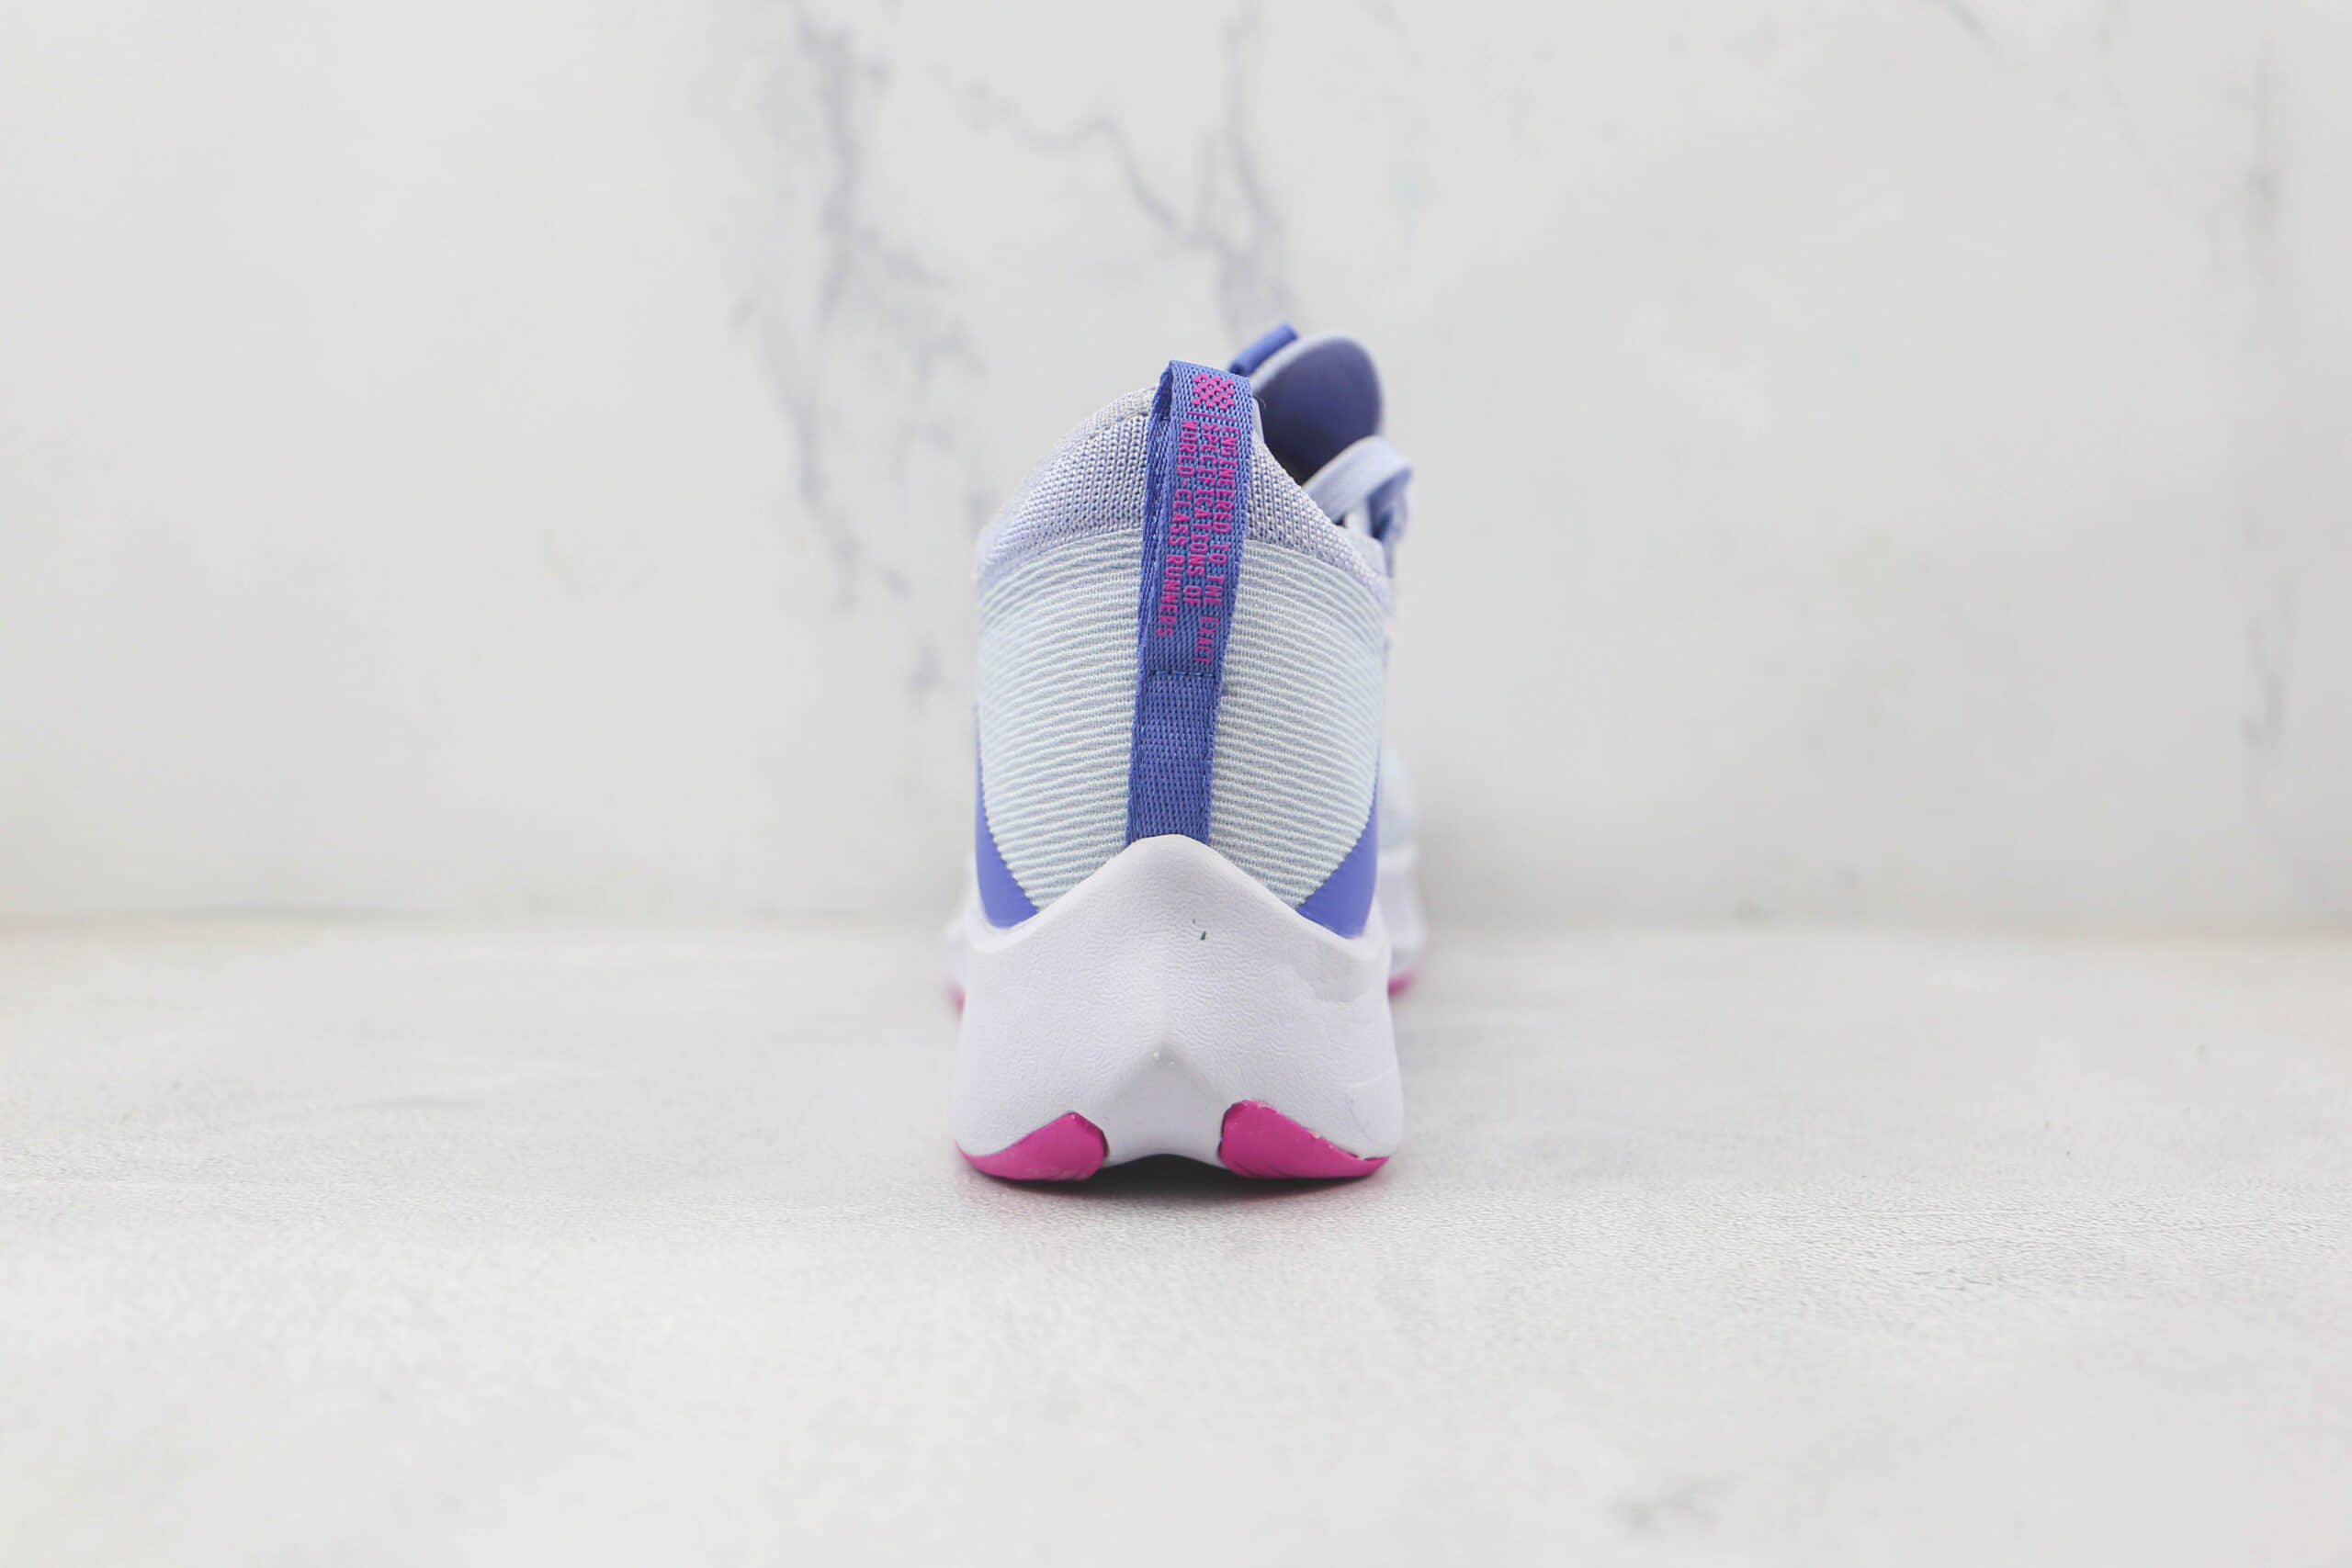 耐克Nike Zoom Fly 4纯原版本白蓝粉色Flyknit慢跑鞋原档案数据开发 货号：CT2401-003